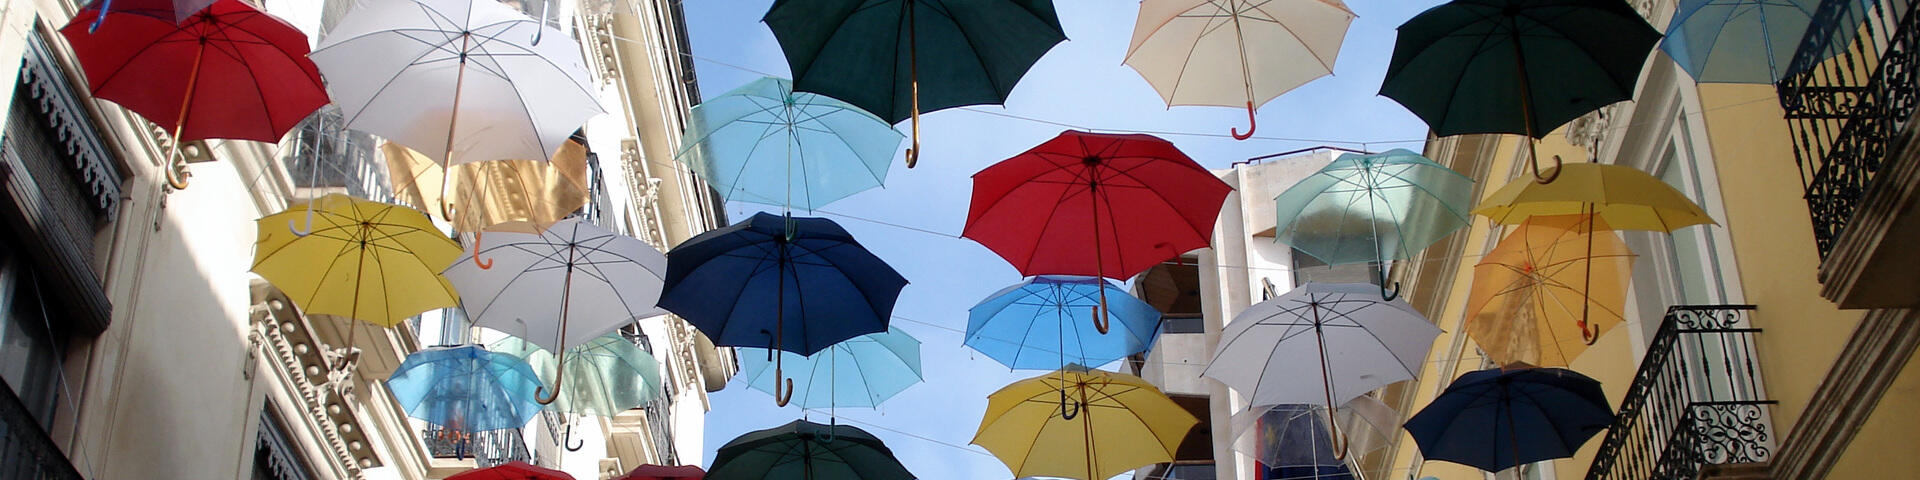 Зонты на улице, Аликанте